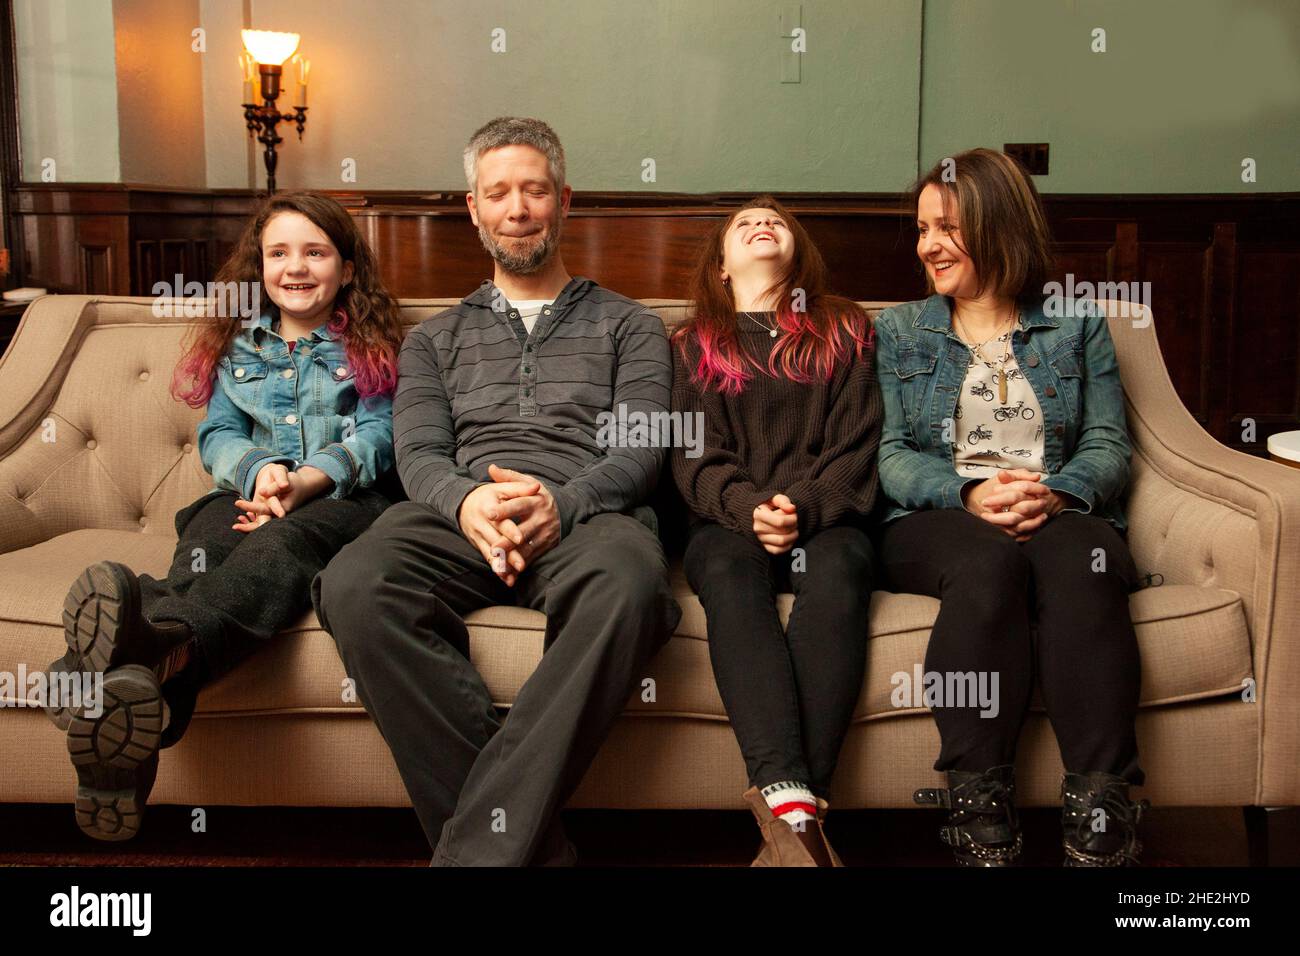 une famille heureuse assise sur son canapé ayant un bon rire dur à quelque chose Banque D'Images